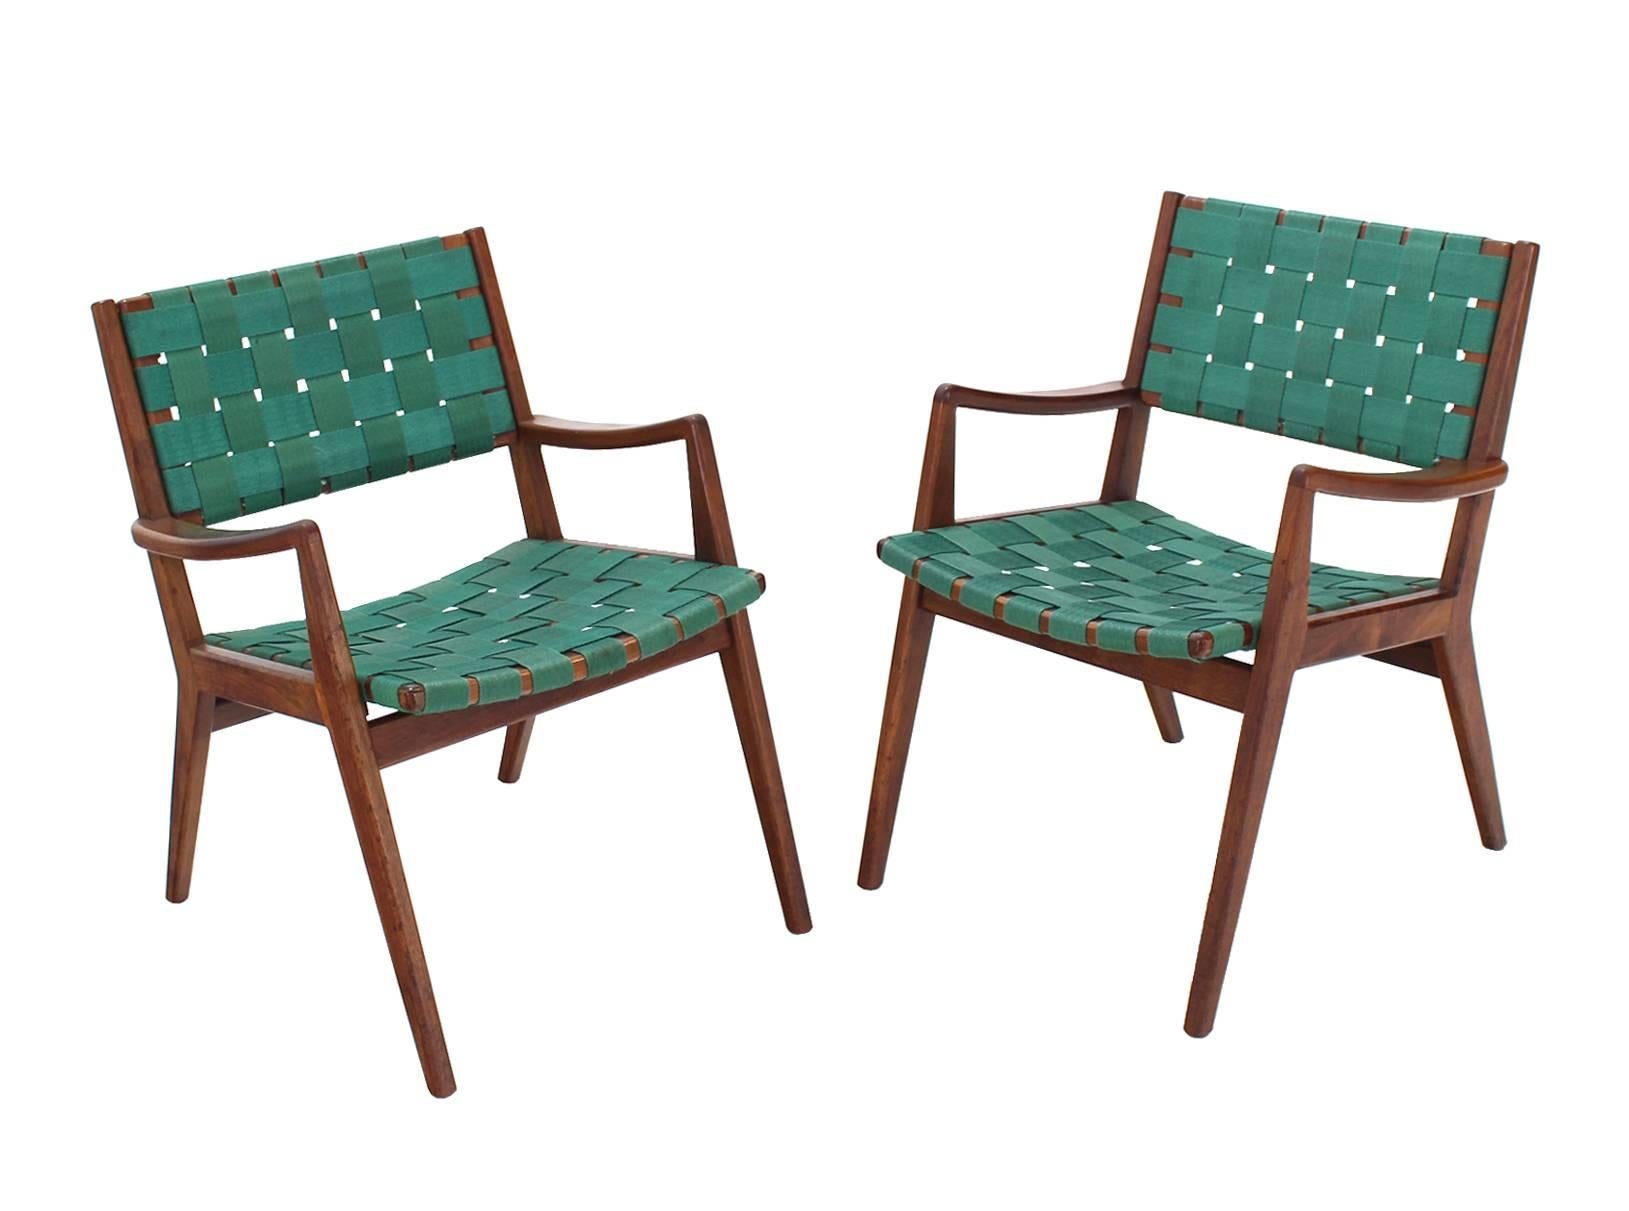 Ein Paar sehr schöne Mid-Century Modern Lounge-Sessel, möglicherweise von Jens Risom entworfen.